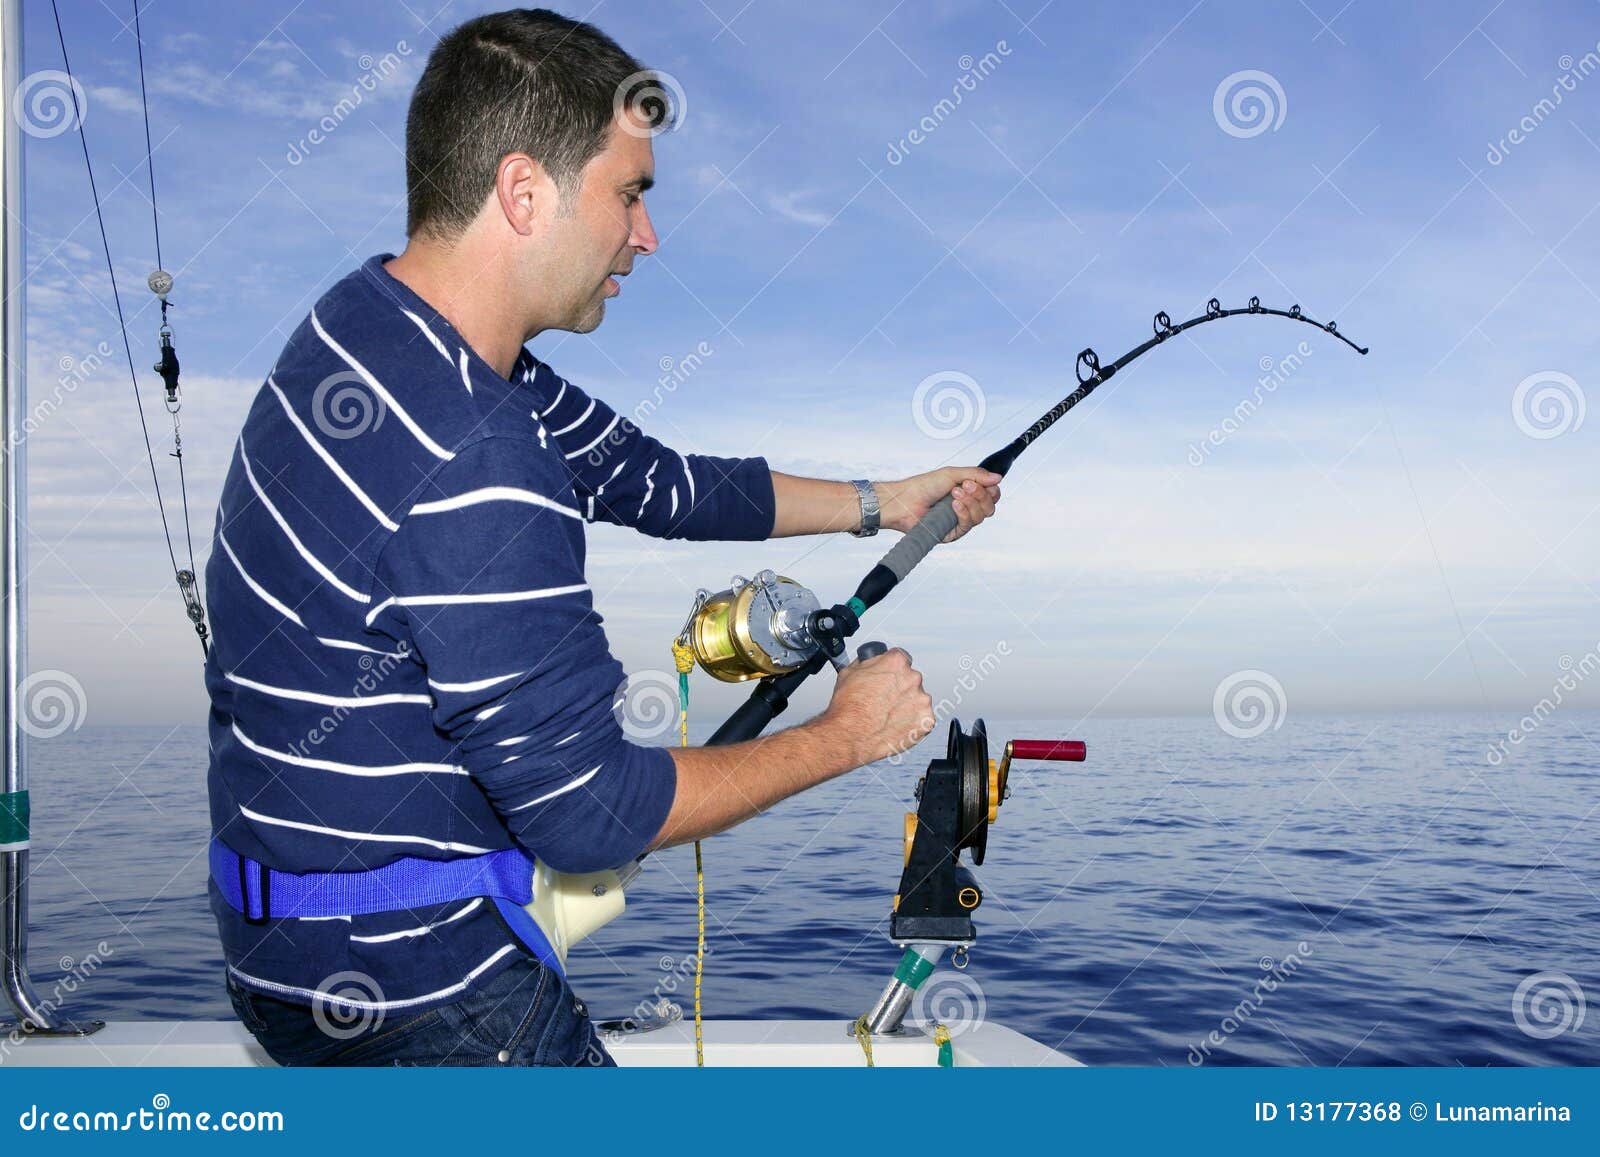 Сон ловлю рыбу на удочку для мужчины. Удочка в руках. Спиннинг в руке. Крупная рыба на удочке. Удочки для рыбалки крупной рыбы.